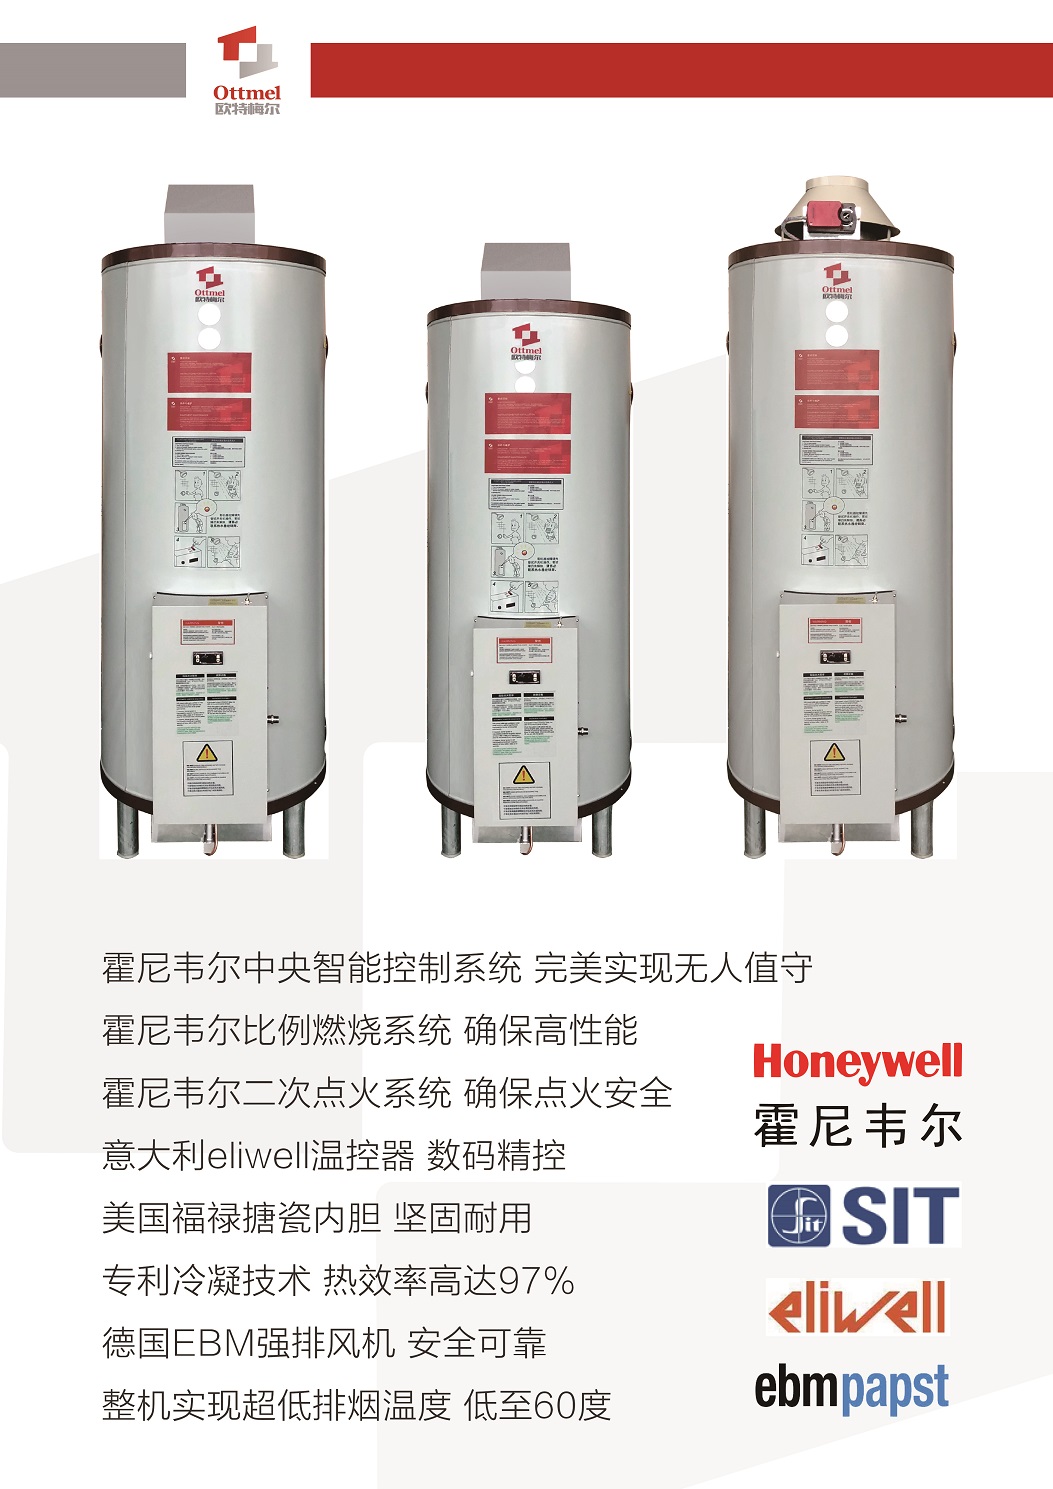 南宁热力士容积式燃气热水器 来电咨询 欧特梅尔新能源供应